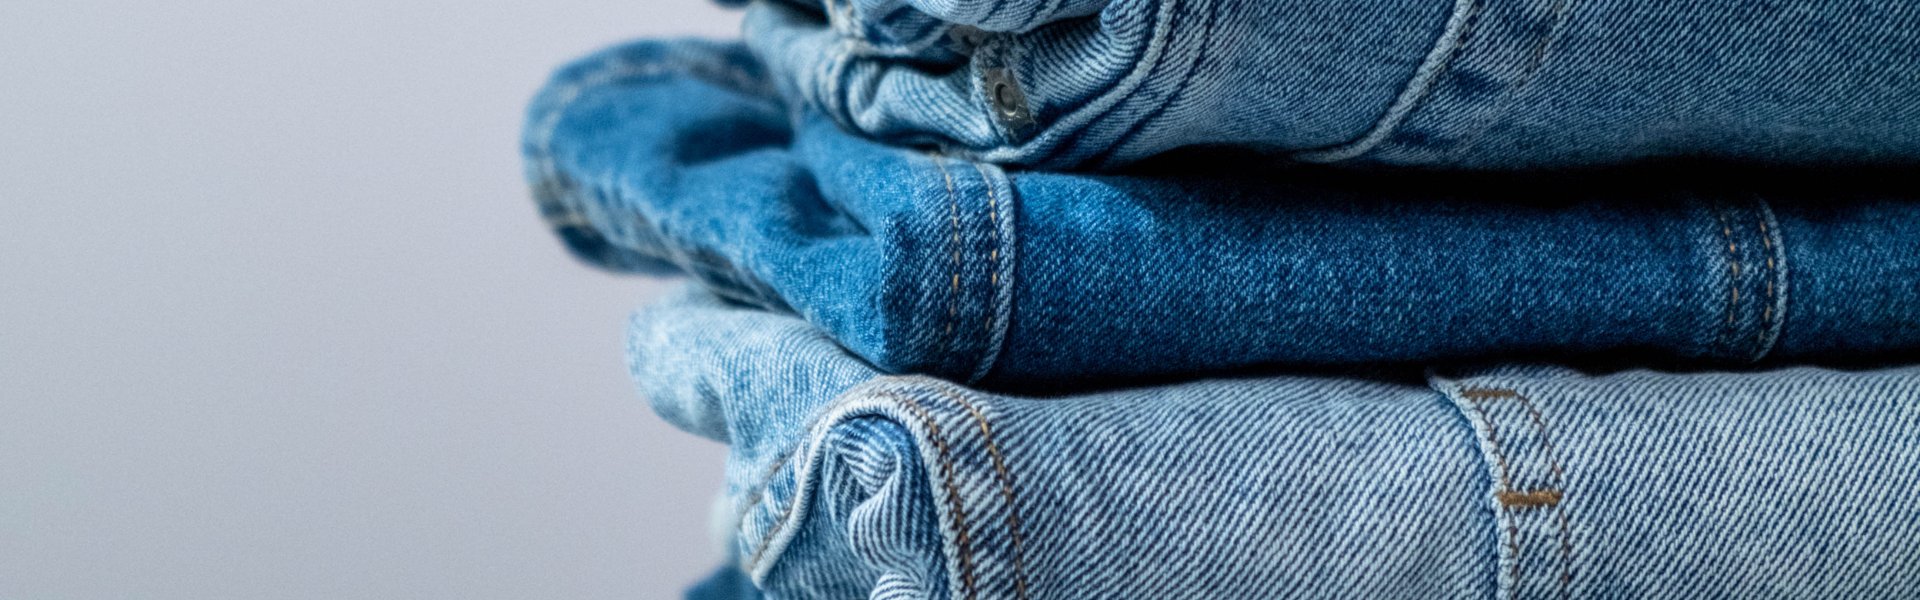 neem medicijnen Nieuwe betekenis Makkelijk in de omgang Kancan Flare Jeans | Vervet Flare Jeans | 12 Tribes Boutique